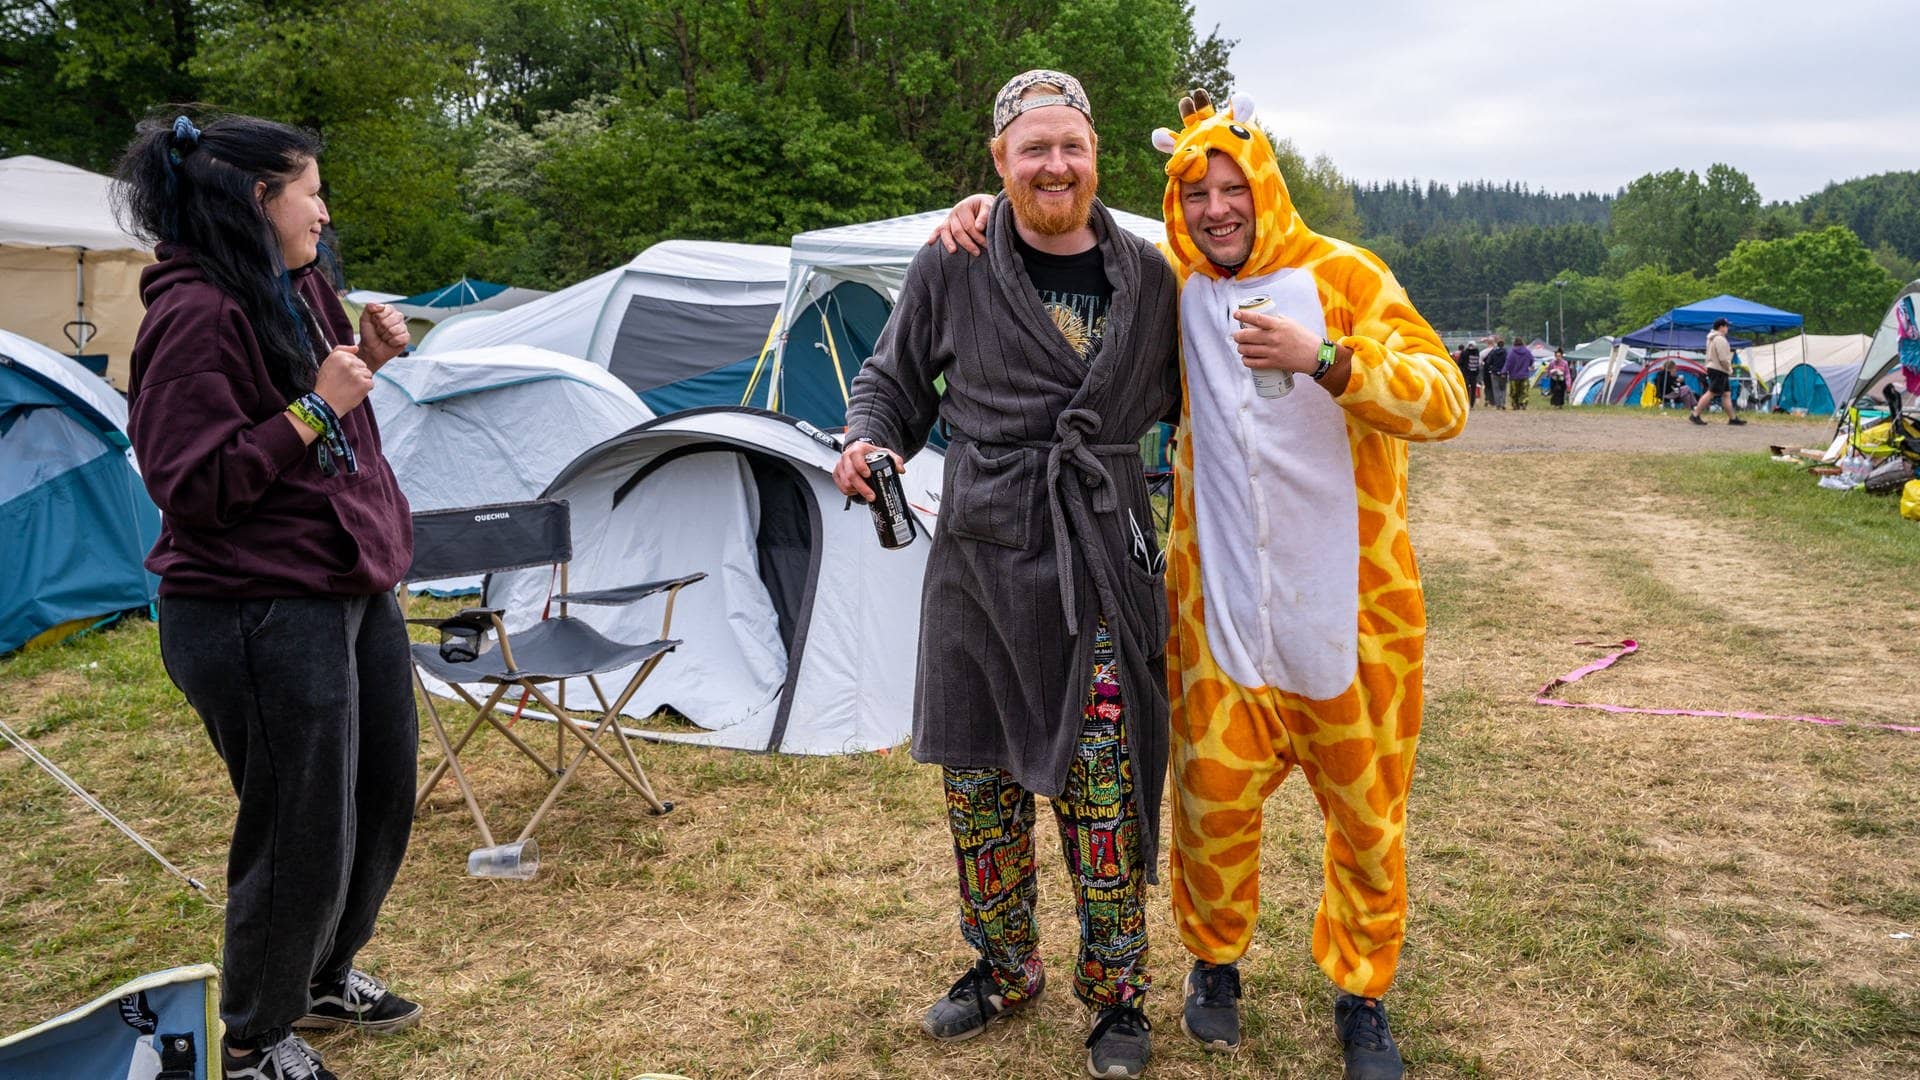 Zwei junge Männer und eine Frau sind auf dem Campingplatz bei Rock am Ring bereits morgens gut gelaunt mit Giraffen-Kostüm und Bademantel bekleidet (Foto: SWR3, SWR3 / Ronny Krautz)